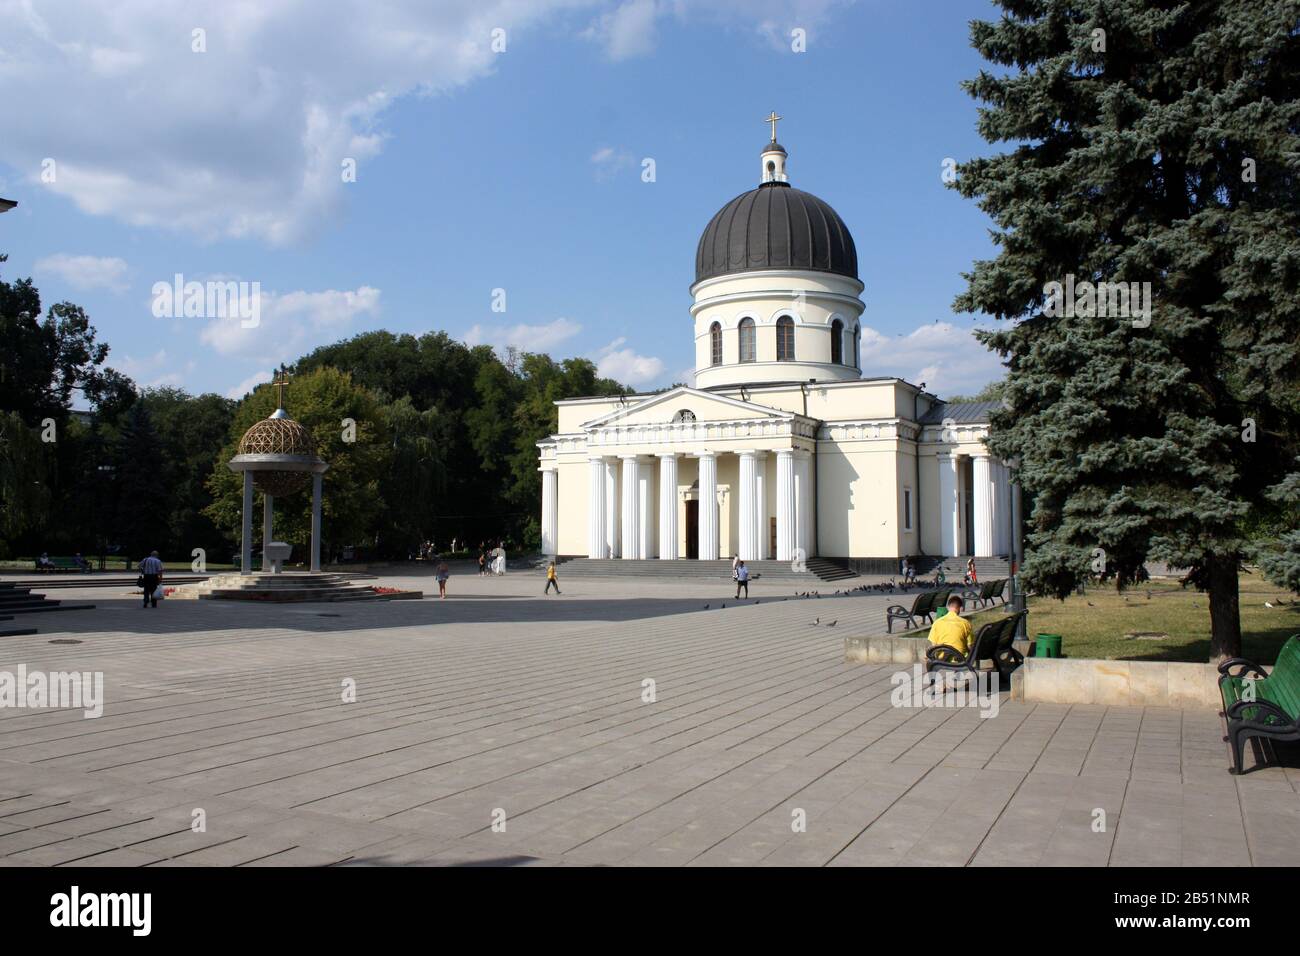 La cathédrale de la Nativité à Chisinau en Moldavie la plus grande église orthodoxe de la ville construite en 1836 Banque D'Images